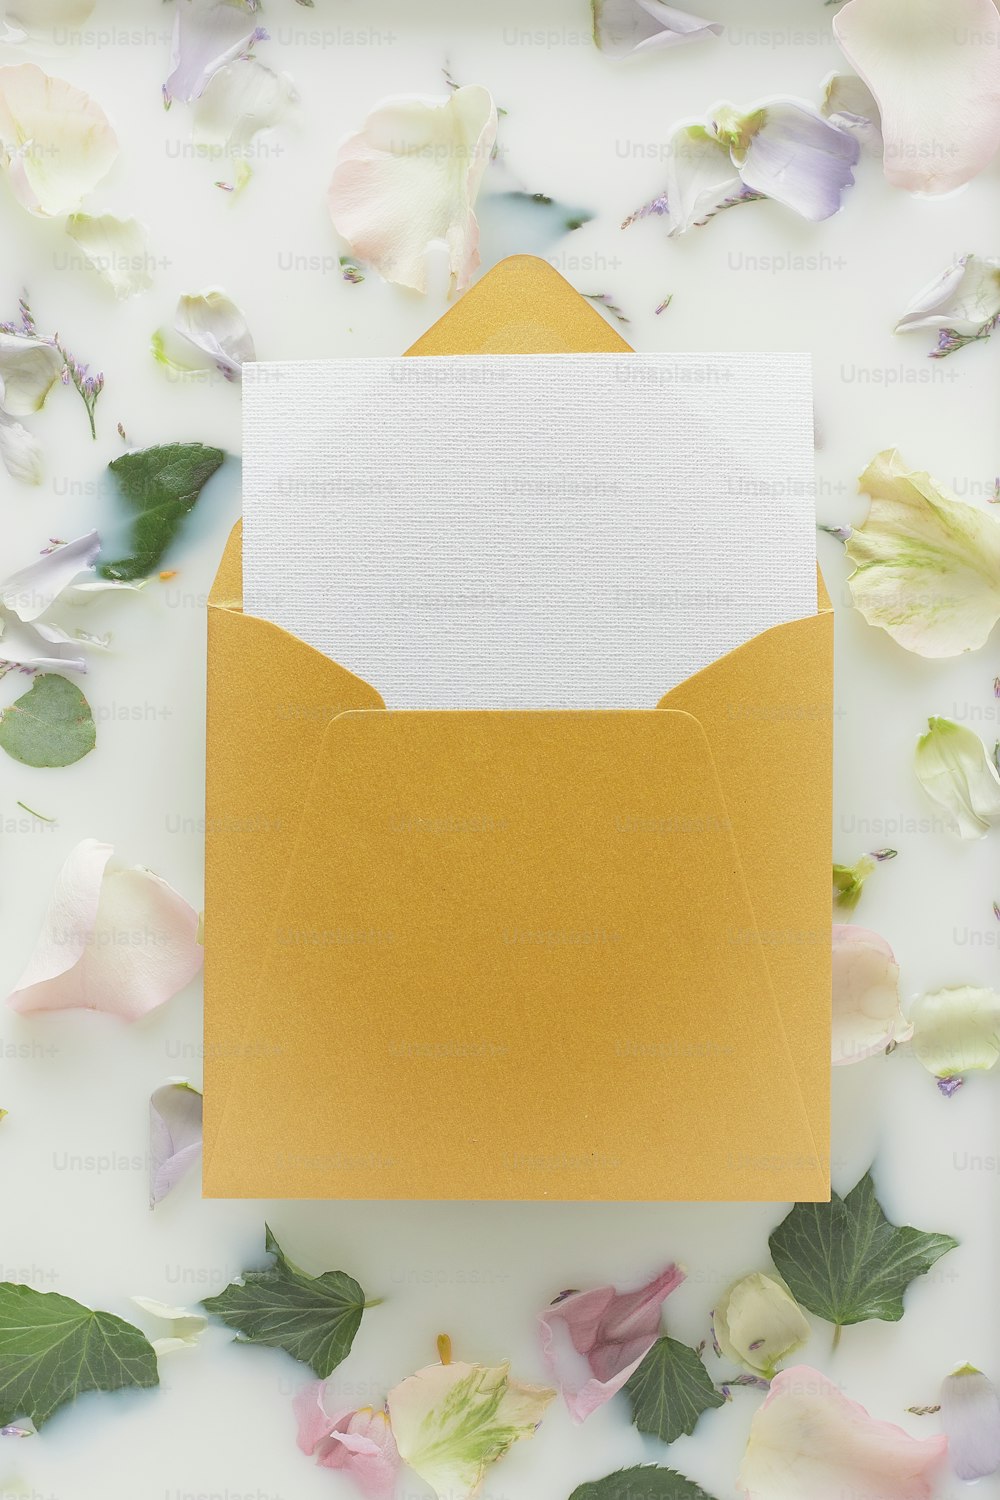 ein gelber Umschlag mit einer weißen Karte im Inneren, umgeben von Blumen